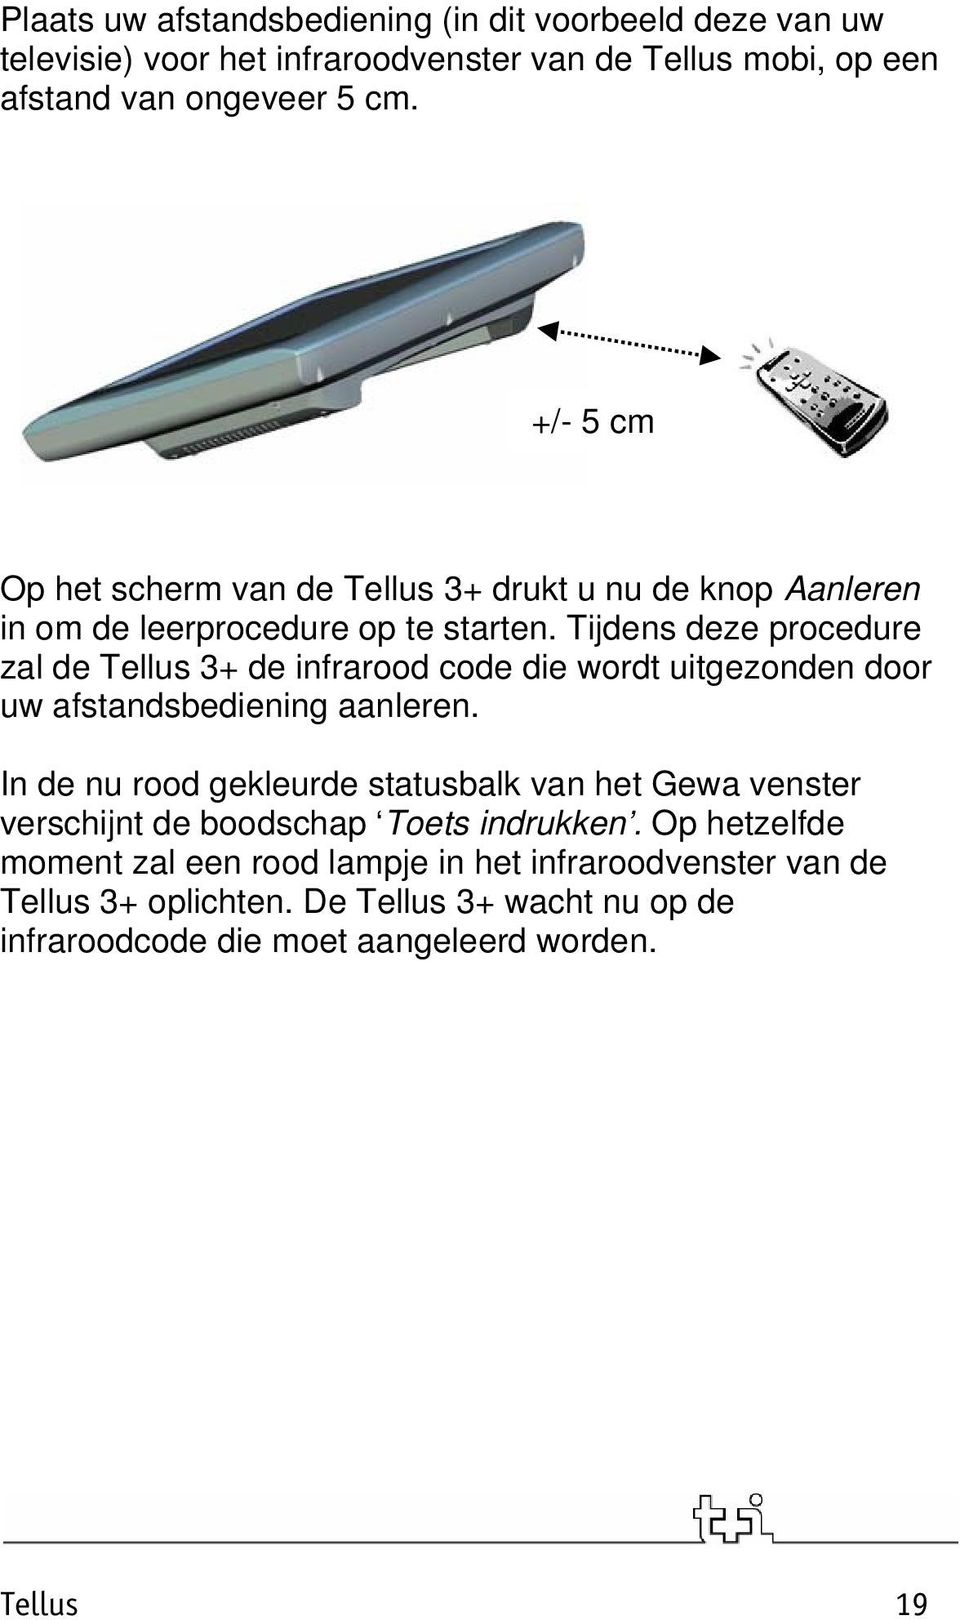 Tijdens deze procedure zal de Tellus 3+ de infrarood code die wordt uitgezonden door uw afstandsbediening aanleren.